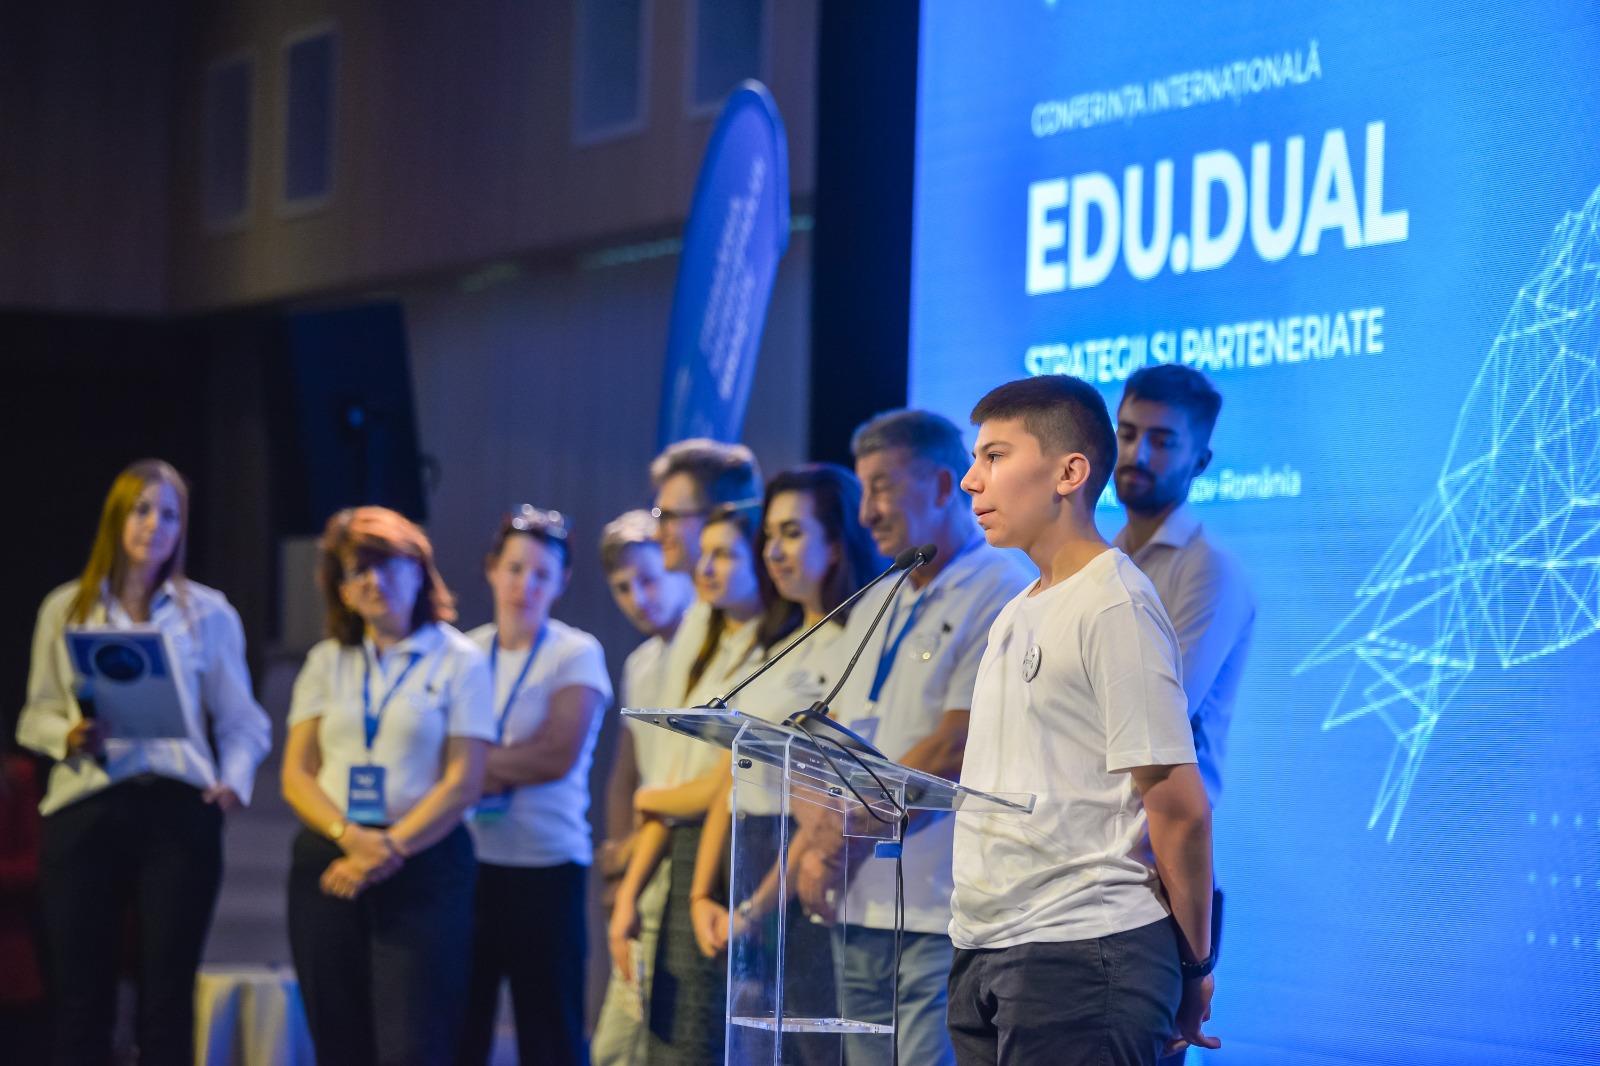 Brașovul găzduiește cea de a doua ediție a EDU Dual, conferința dedicată dezvoltării învățământului profesional